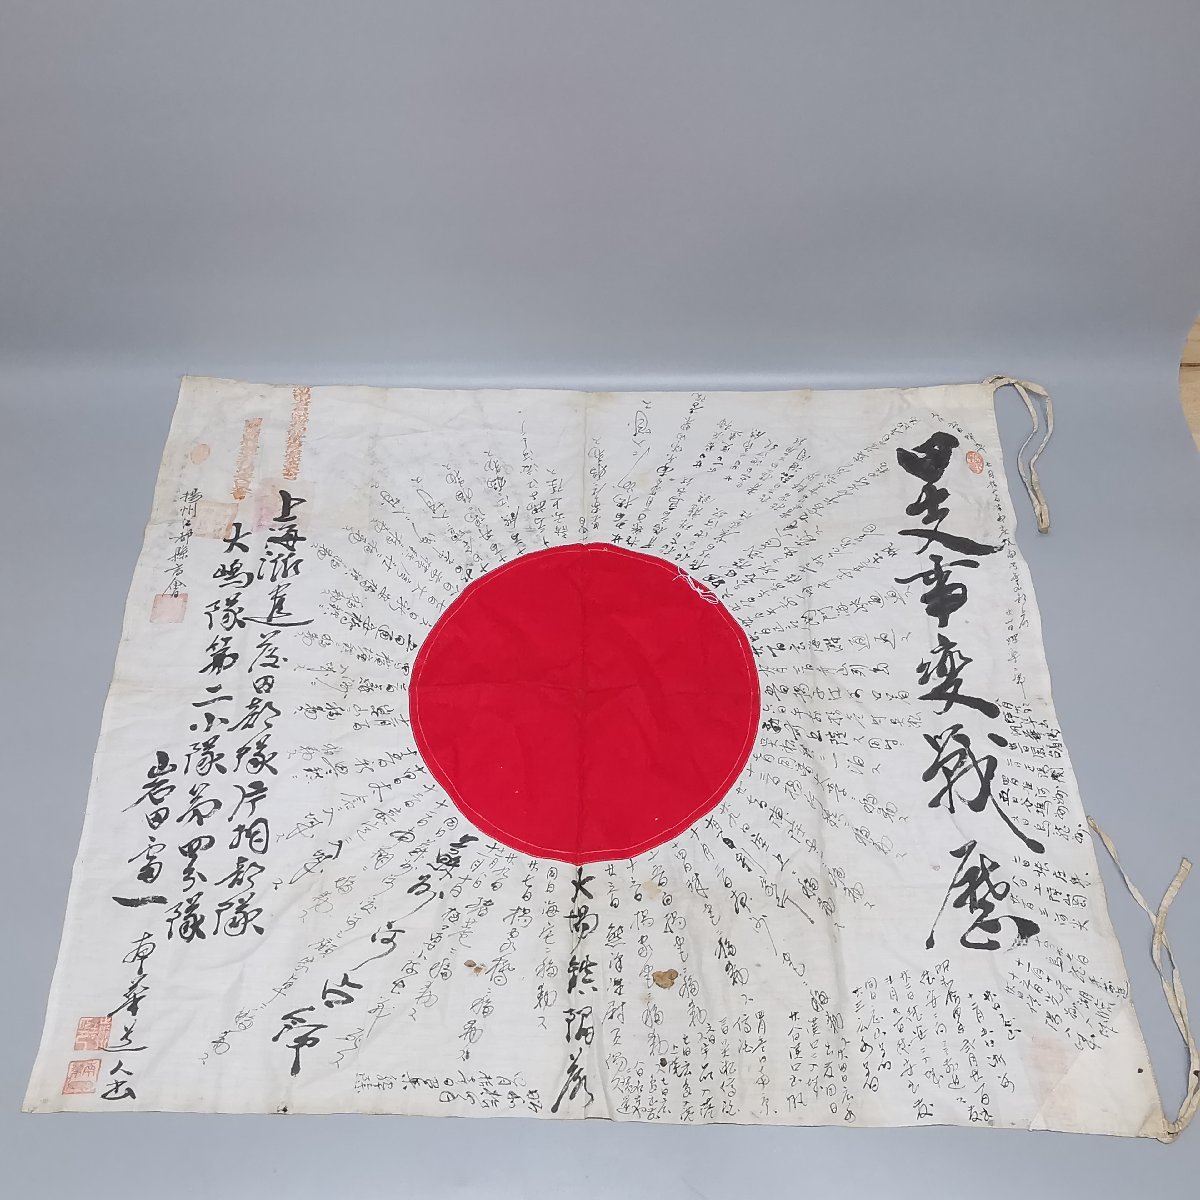 日章旗寄せ書き 日の丸寄書出征旗 日本軍 国旗 戦前 戦時 資料 時代物 